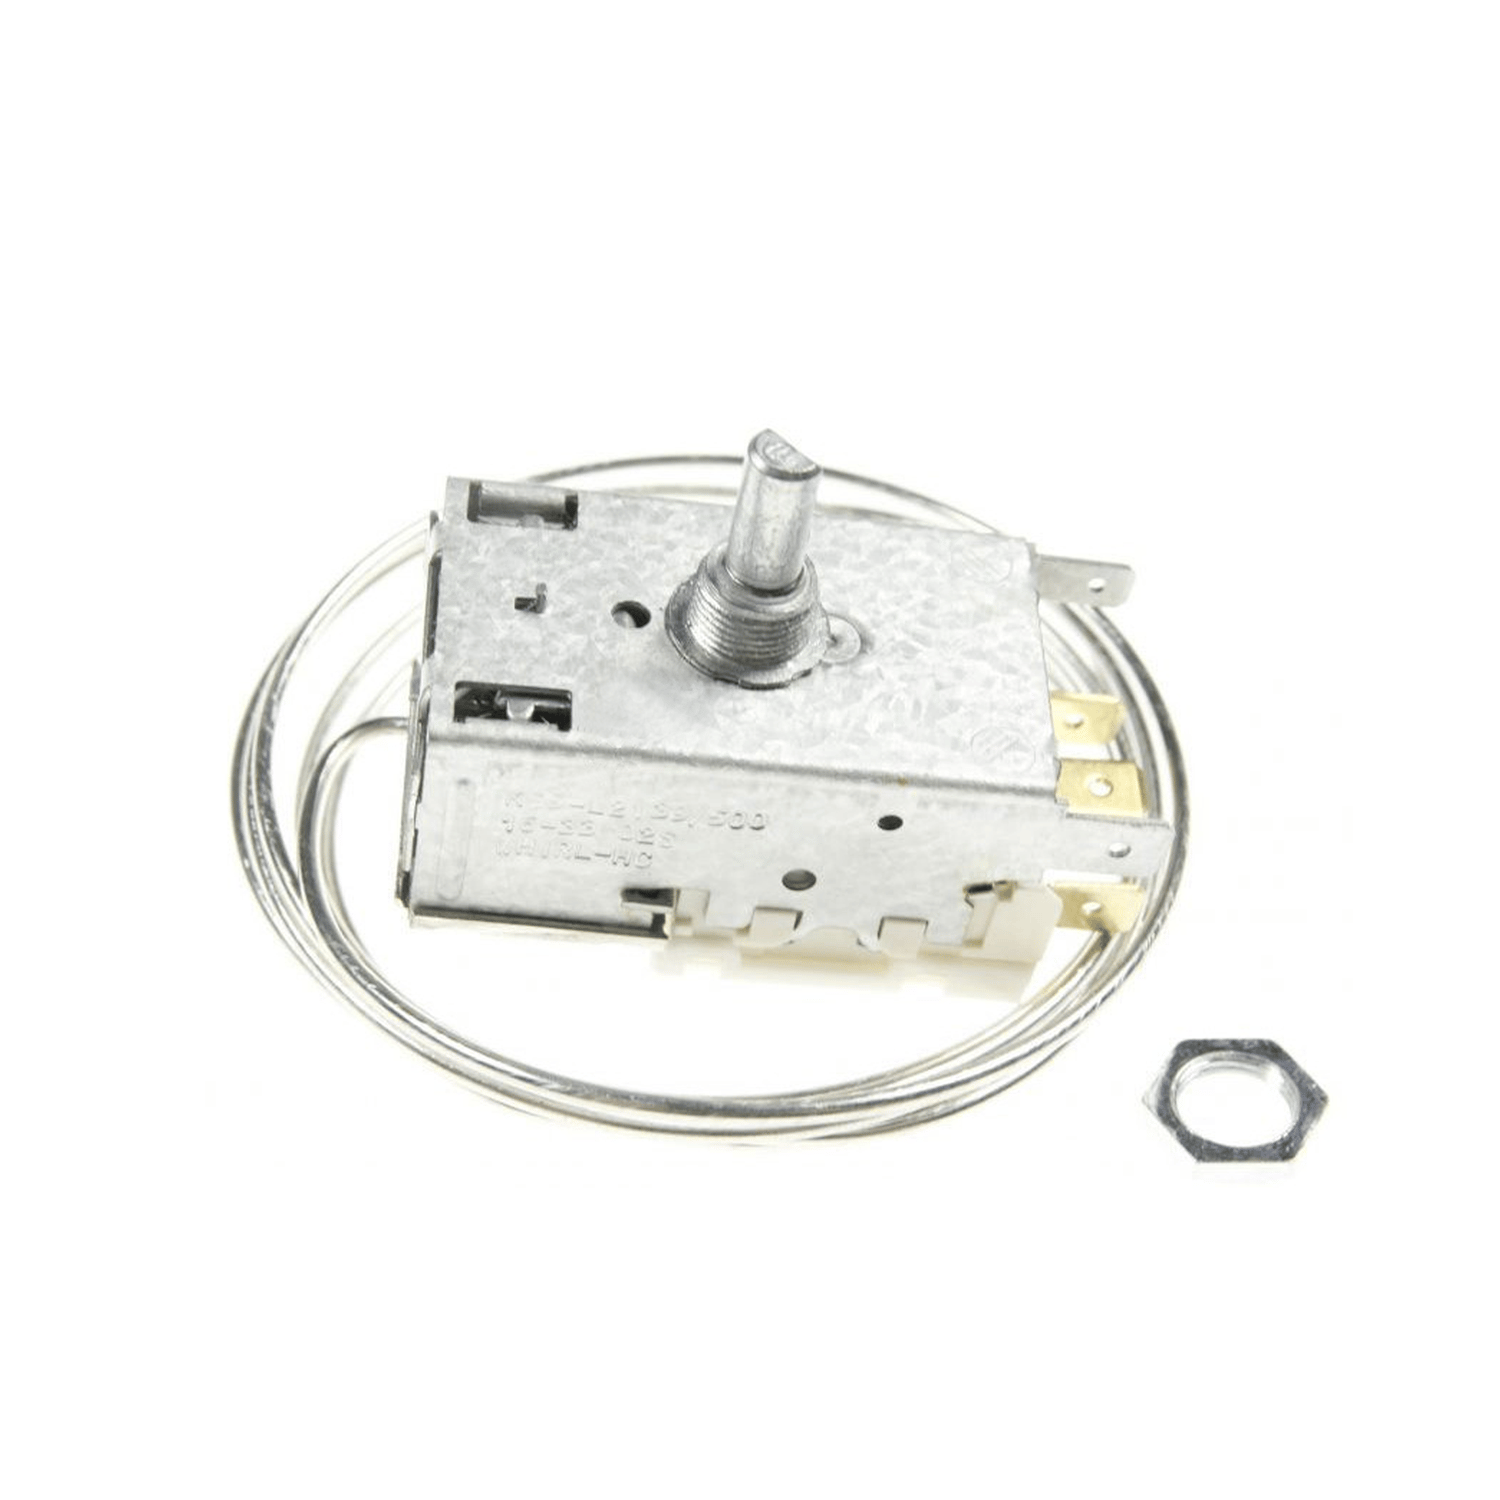 Termostato Ranco K59-L2139500 para ROBERTSHAW refrigerador, L 1530 mm, 4.8 mm AMP